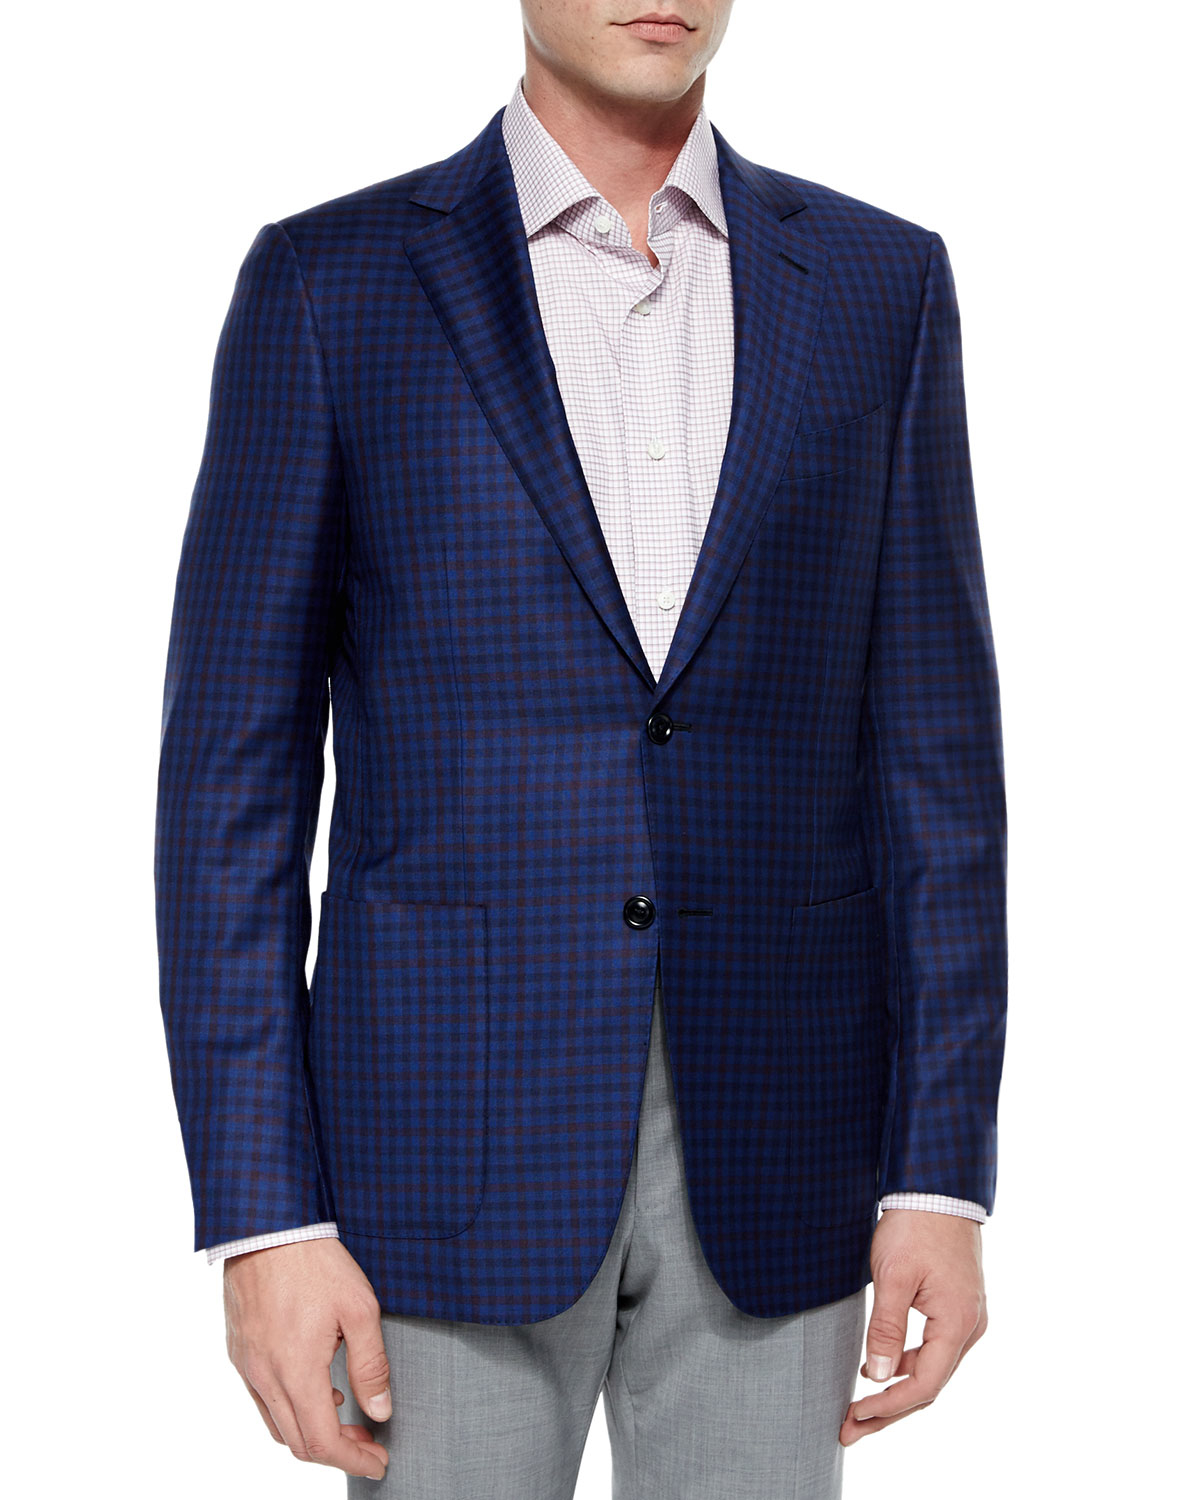 Ermenegildo Zegna Check Wool Sport Coat in Blue for Men - Lyst